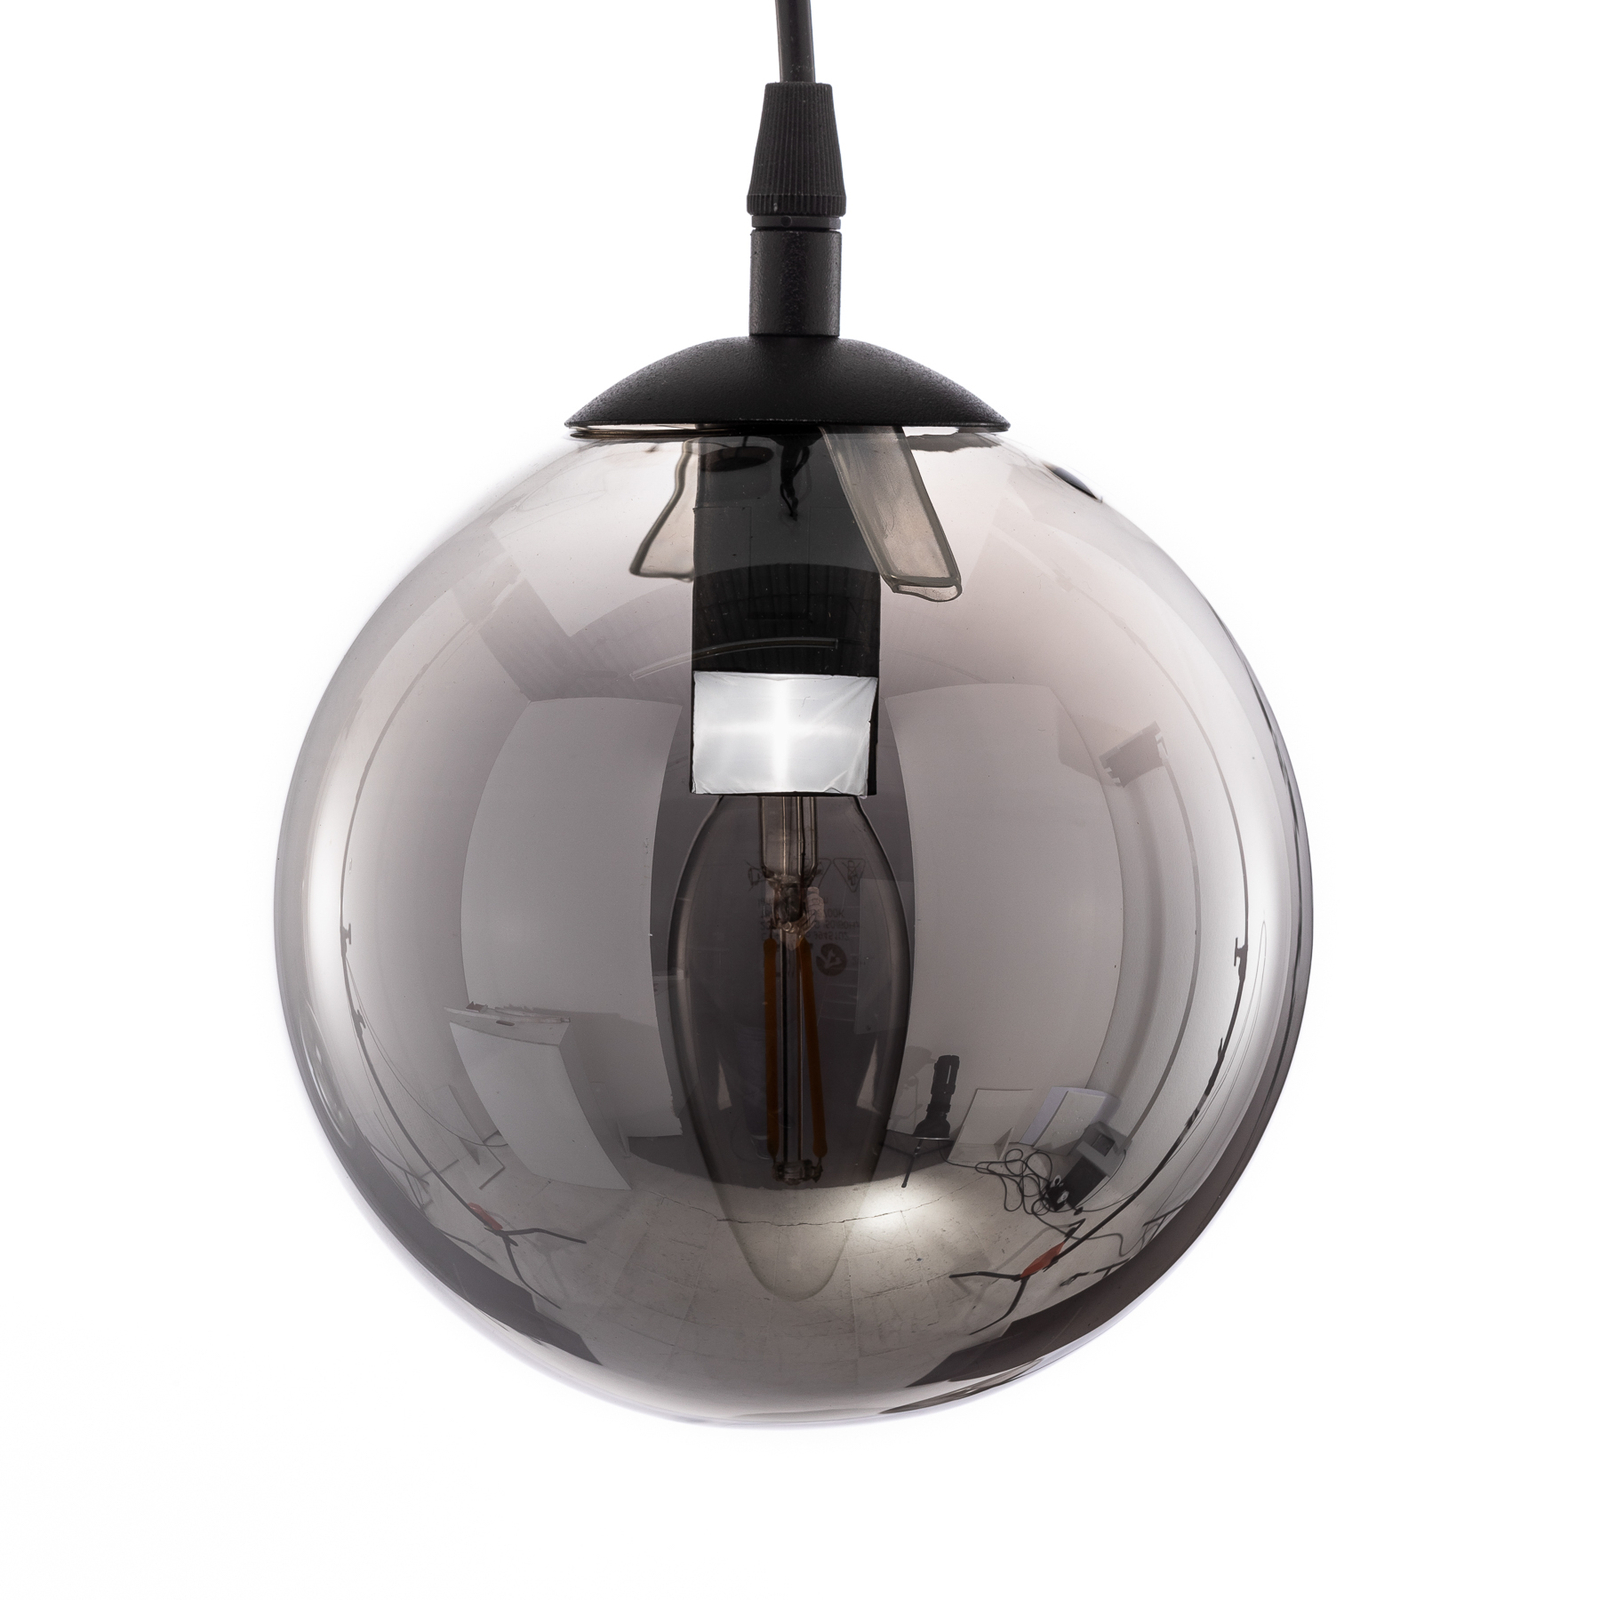 Pendant light Glassy 3-bulb decentralised, glass graphite